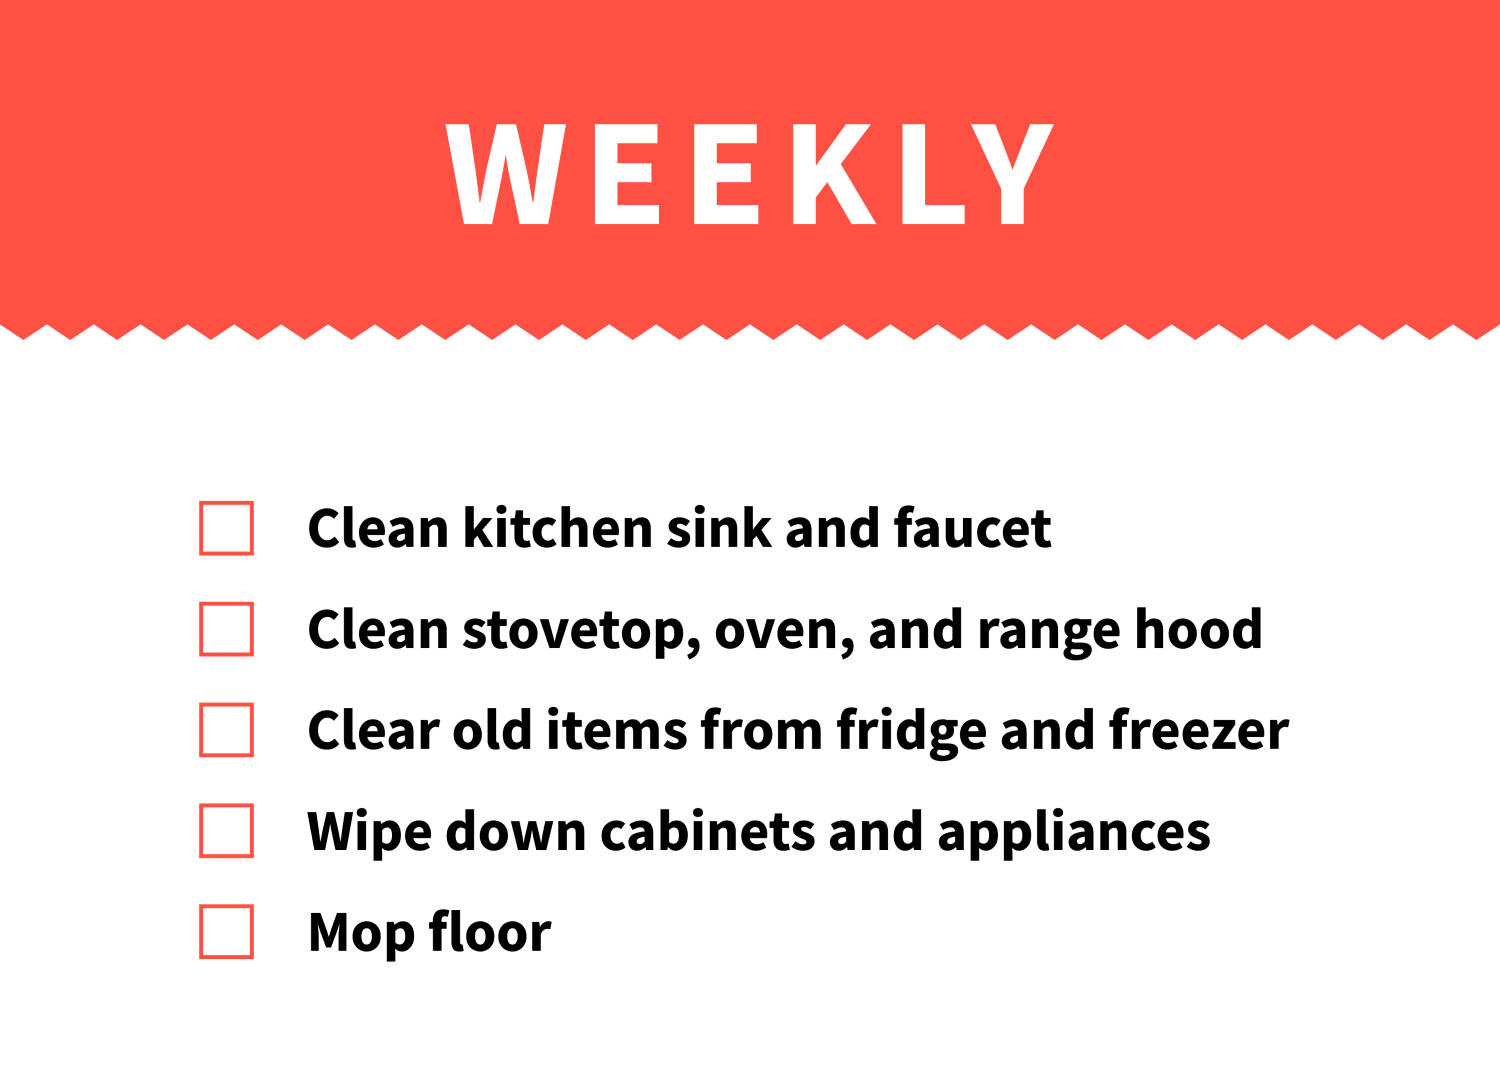 The Complete Kitchen Essentials Checklist